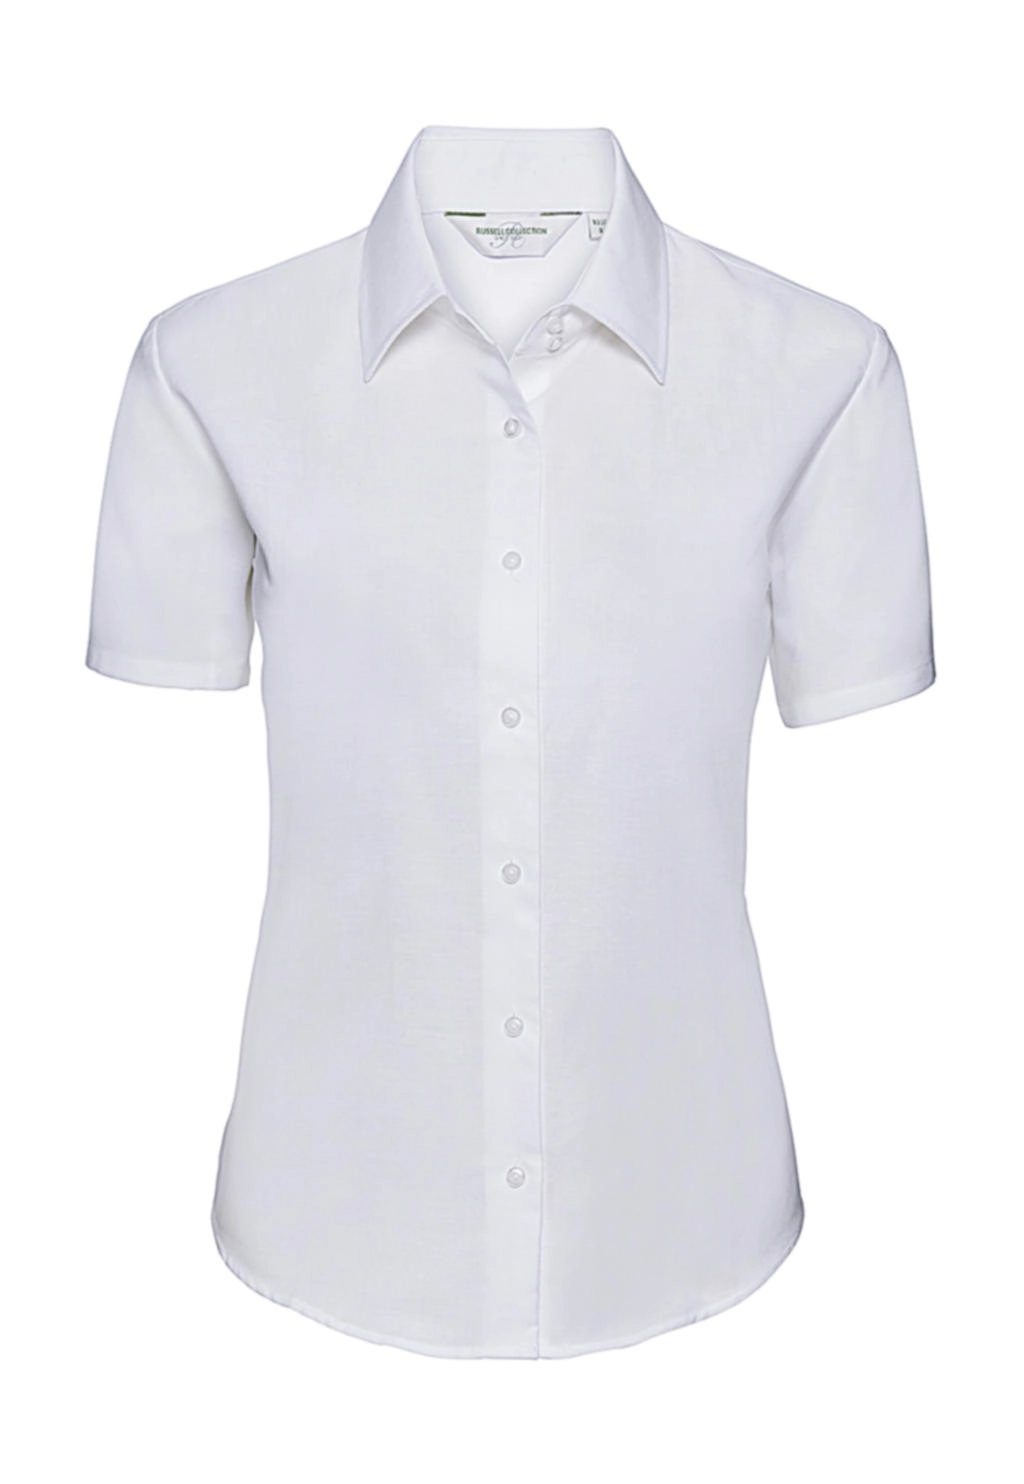 Ladies` Classic Oxford Shirt zum Besticken und Bedrucken in der Farbe White mit Ihren Logo, Schriftzug oder Motiv.